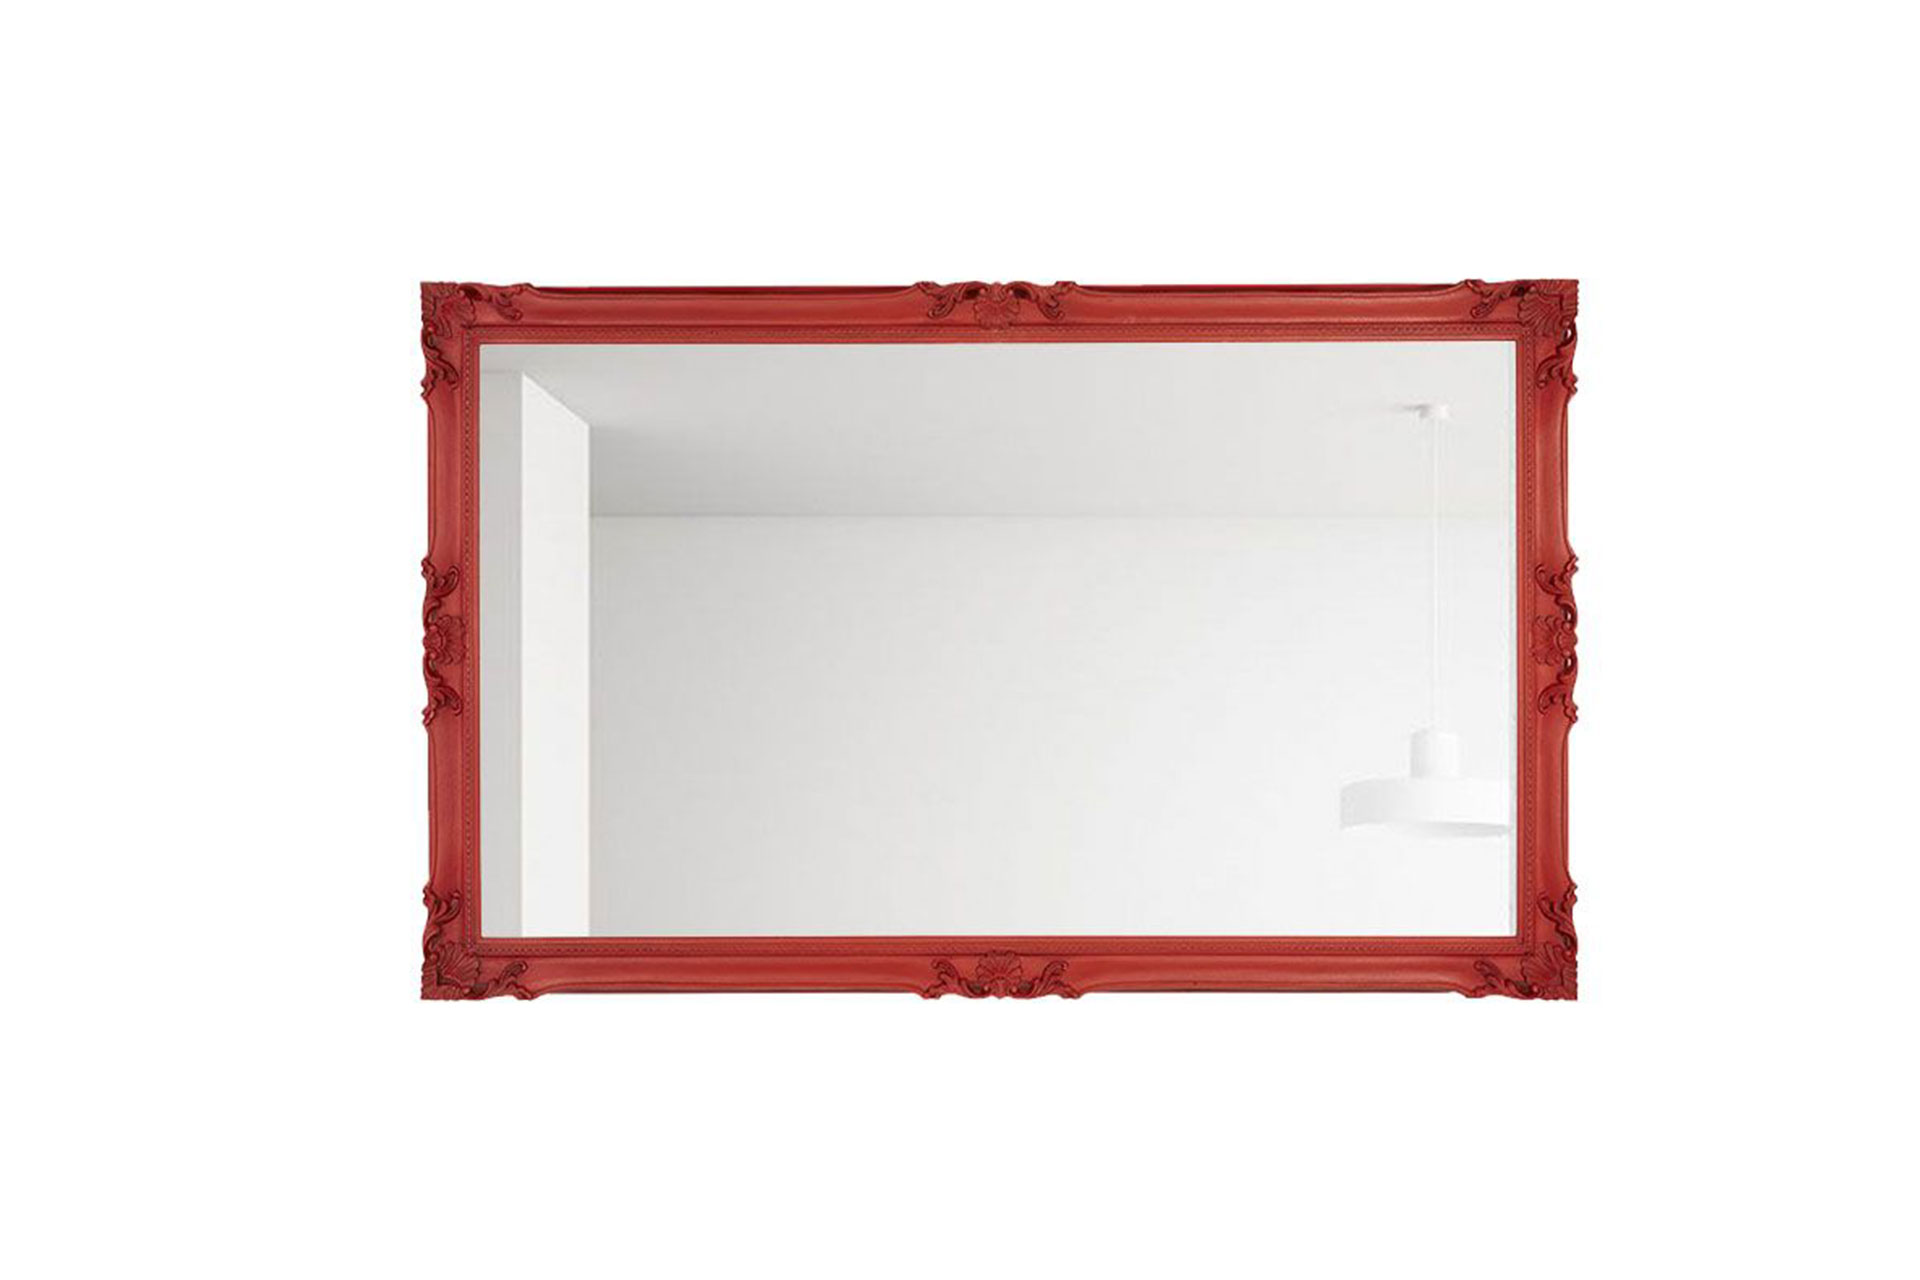  Wandspiegel Modell Brietta, Finishing: black wax Farbe: Warm red Größe außen: 83 cm x 143 cm x 5,5cm Herstellung: by ASR-Rahmendesign Material: Holz und Zellstoff Raum: Innenbereich, Schlafzimmer, Wohnzimmer Spiegel: Facettenspiegel